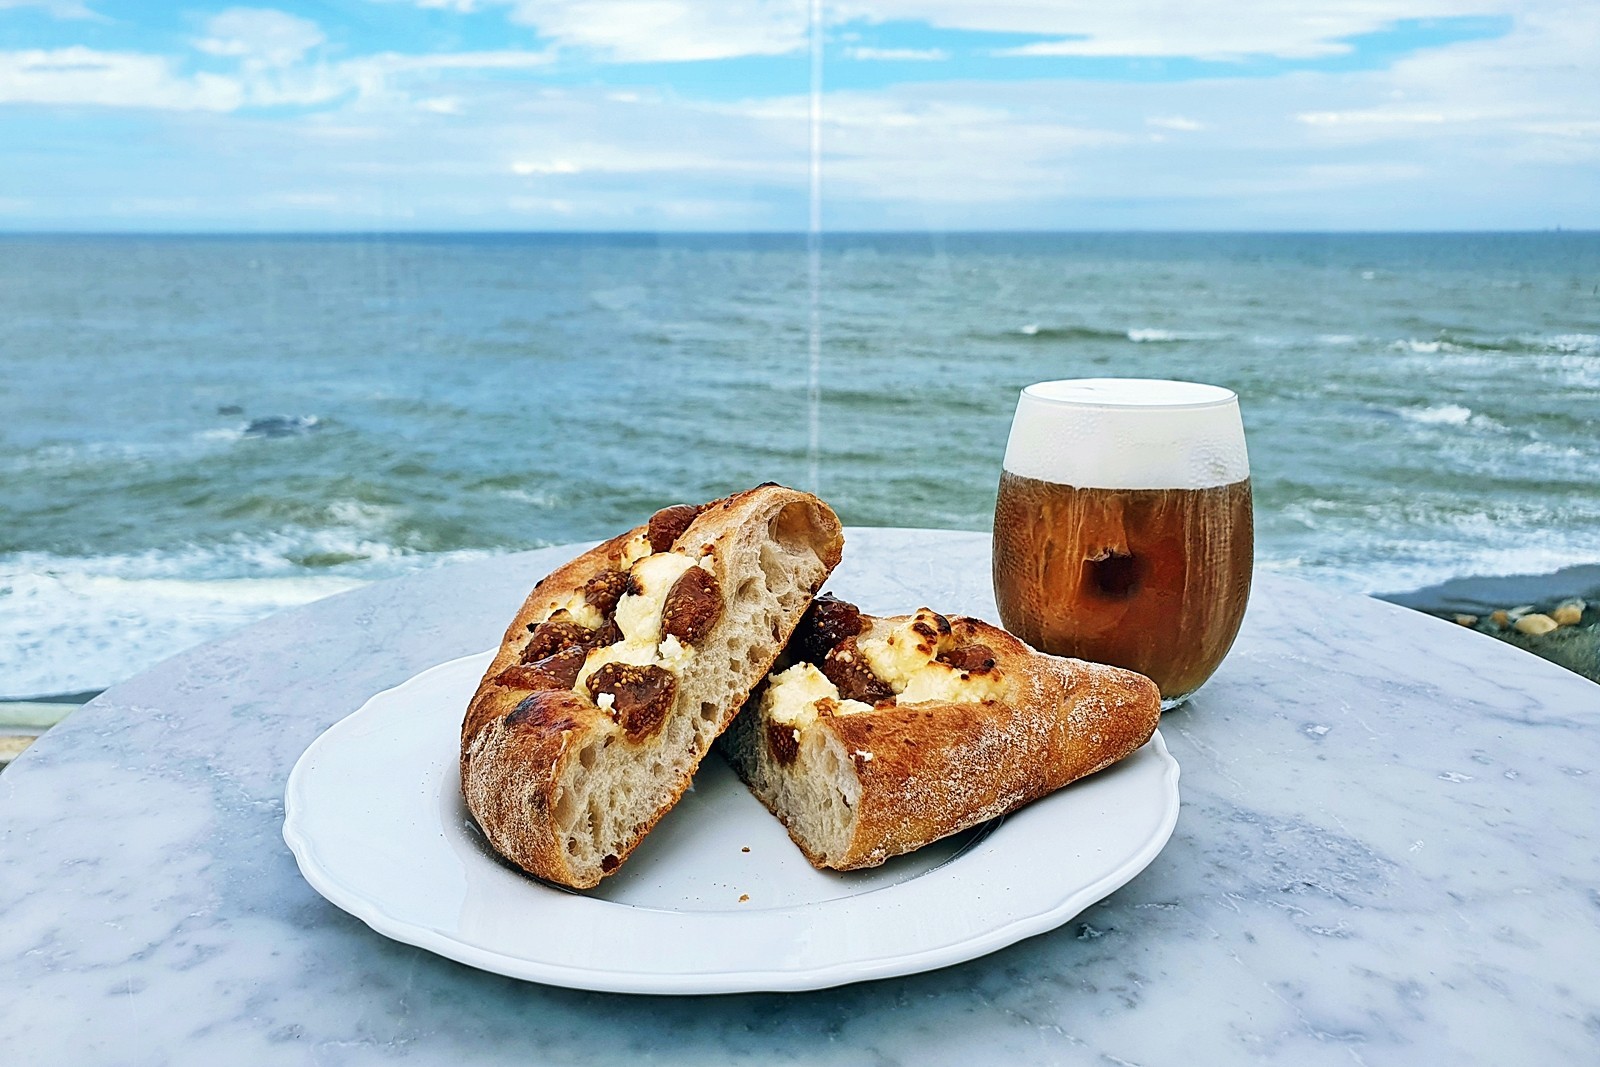 바다전망이 보이는 테이블 위에 올려진 빵과 음료